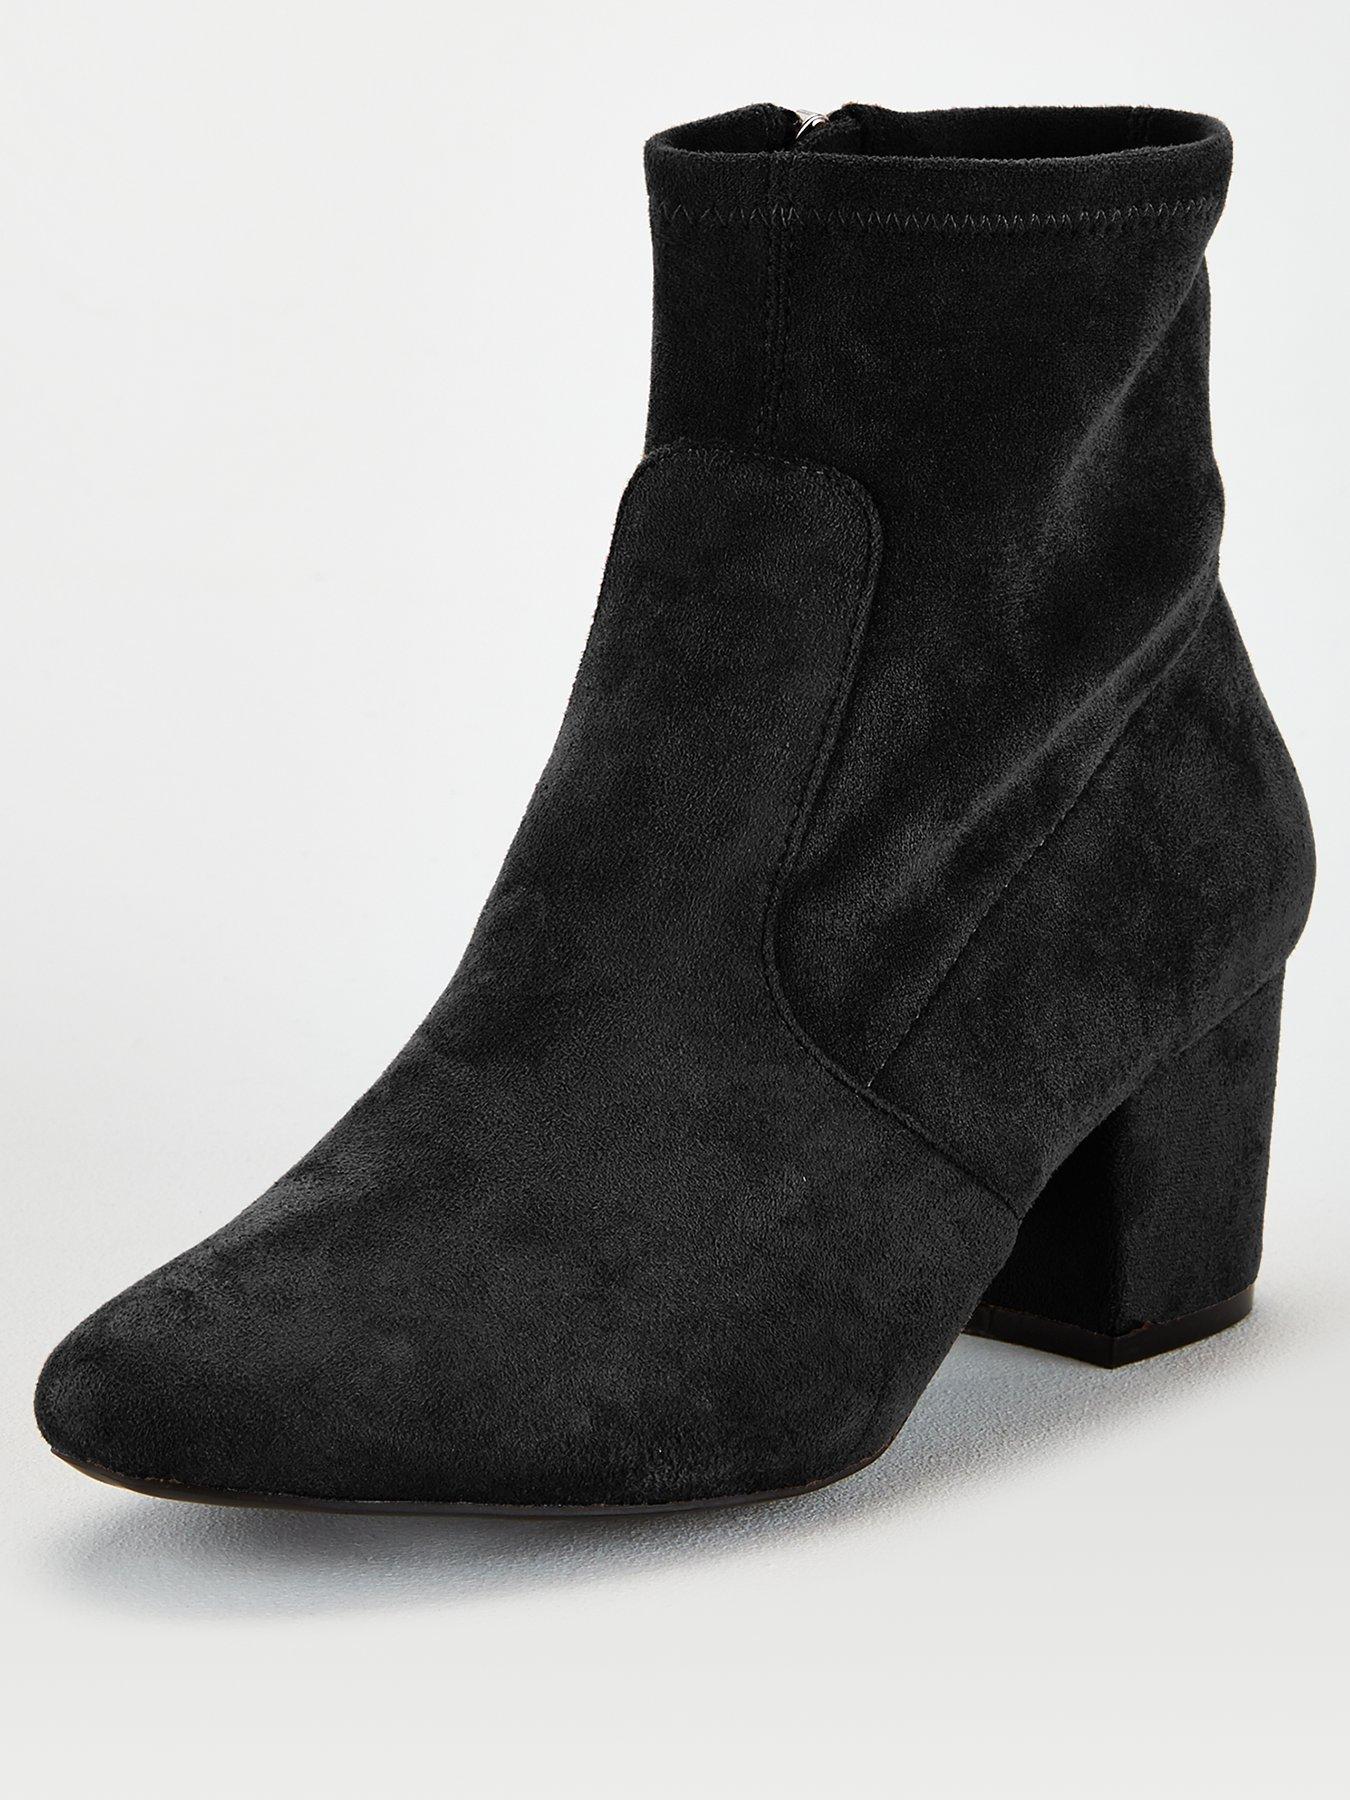 2.5 inch heel boots